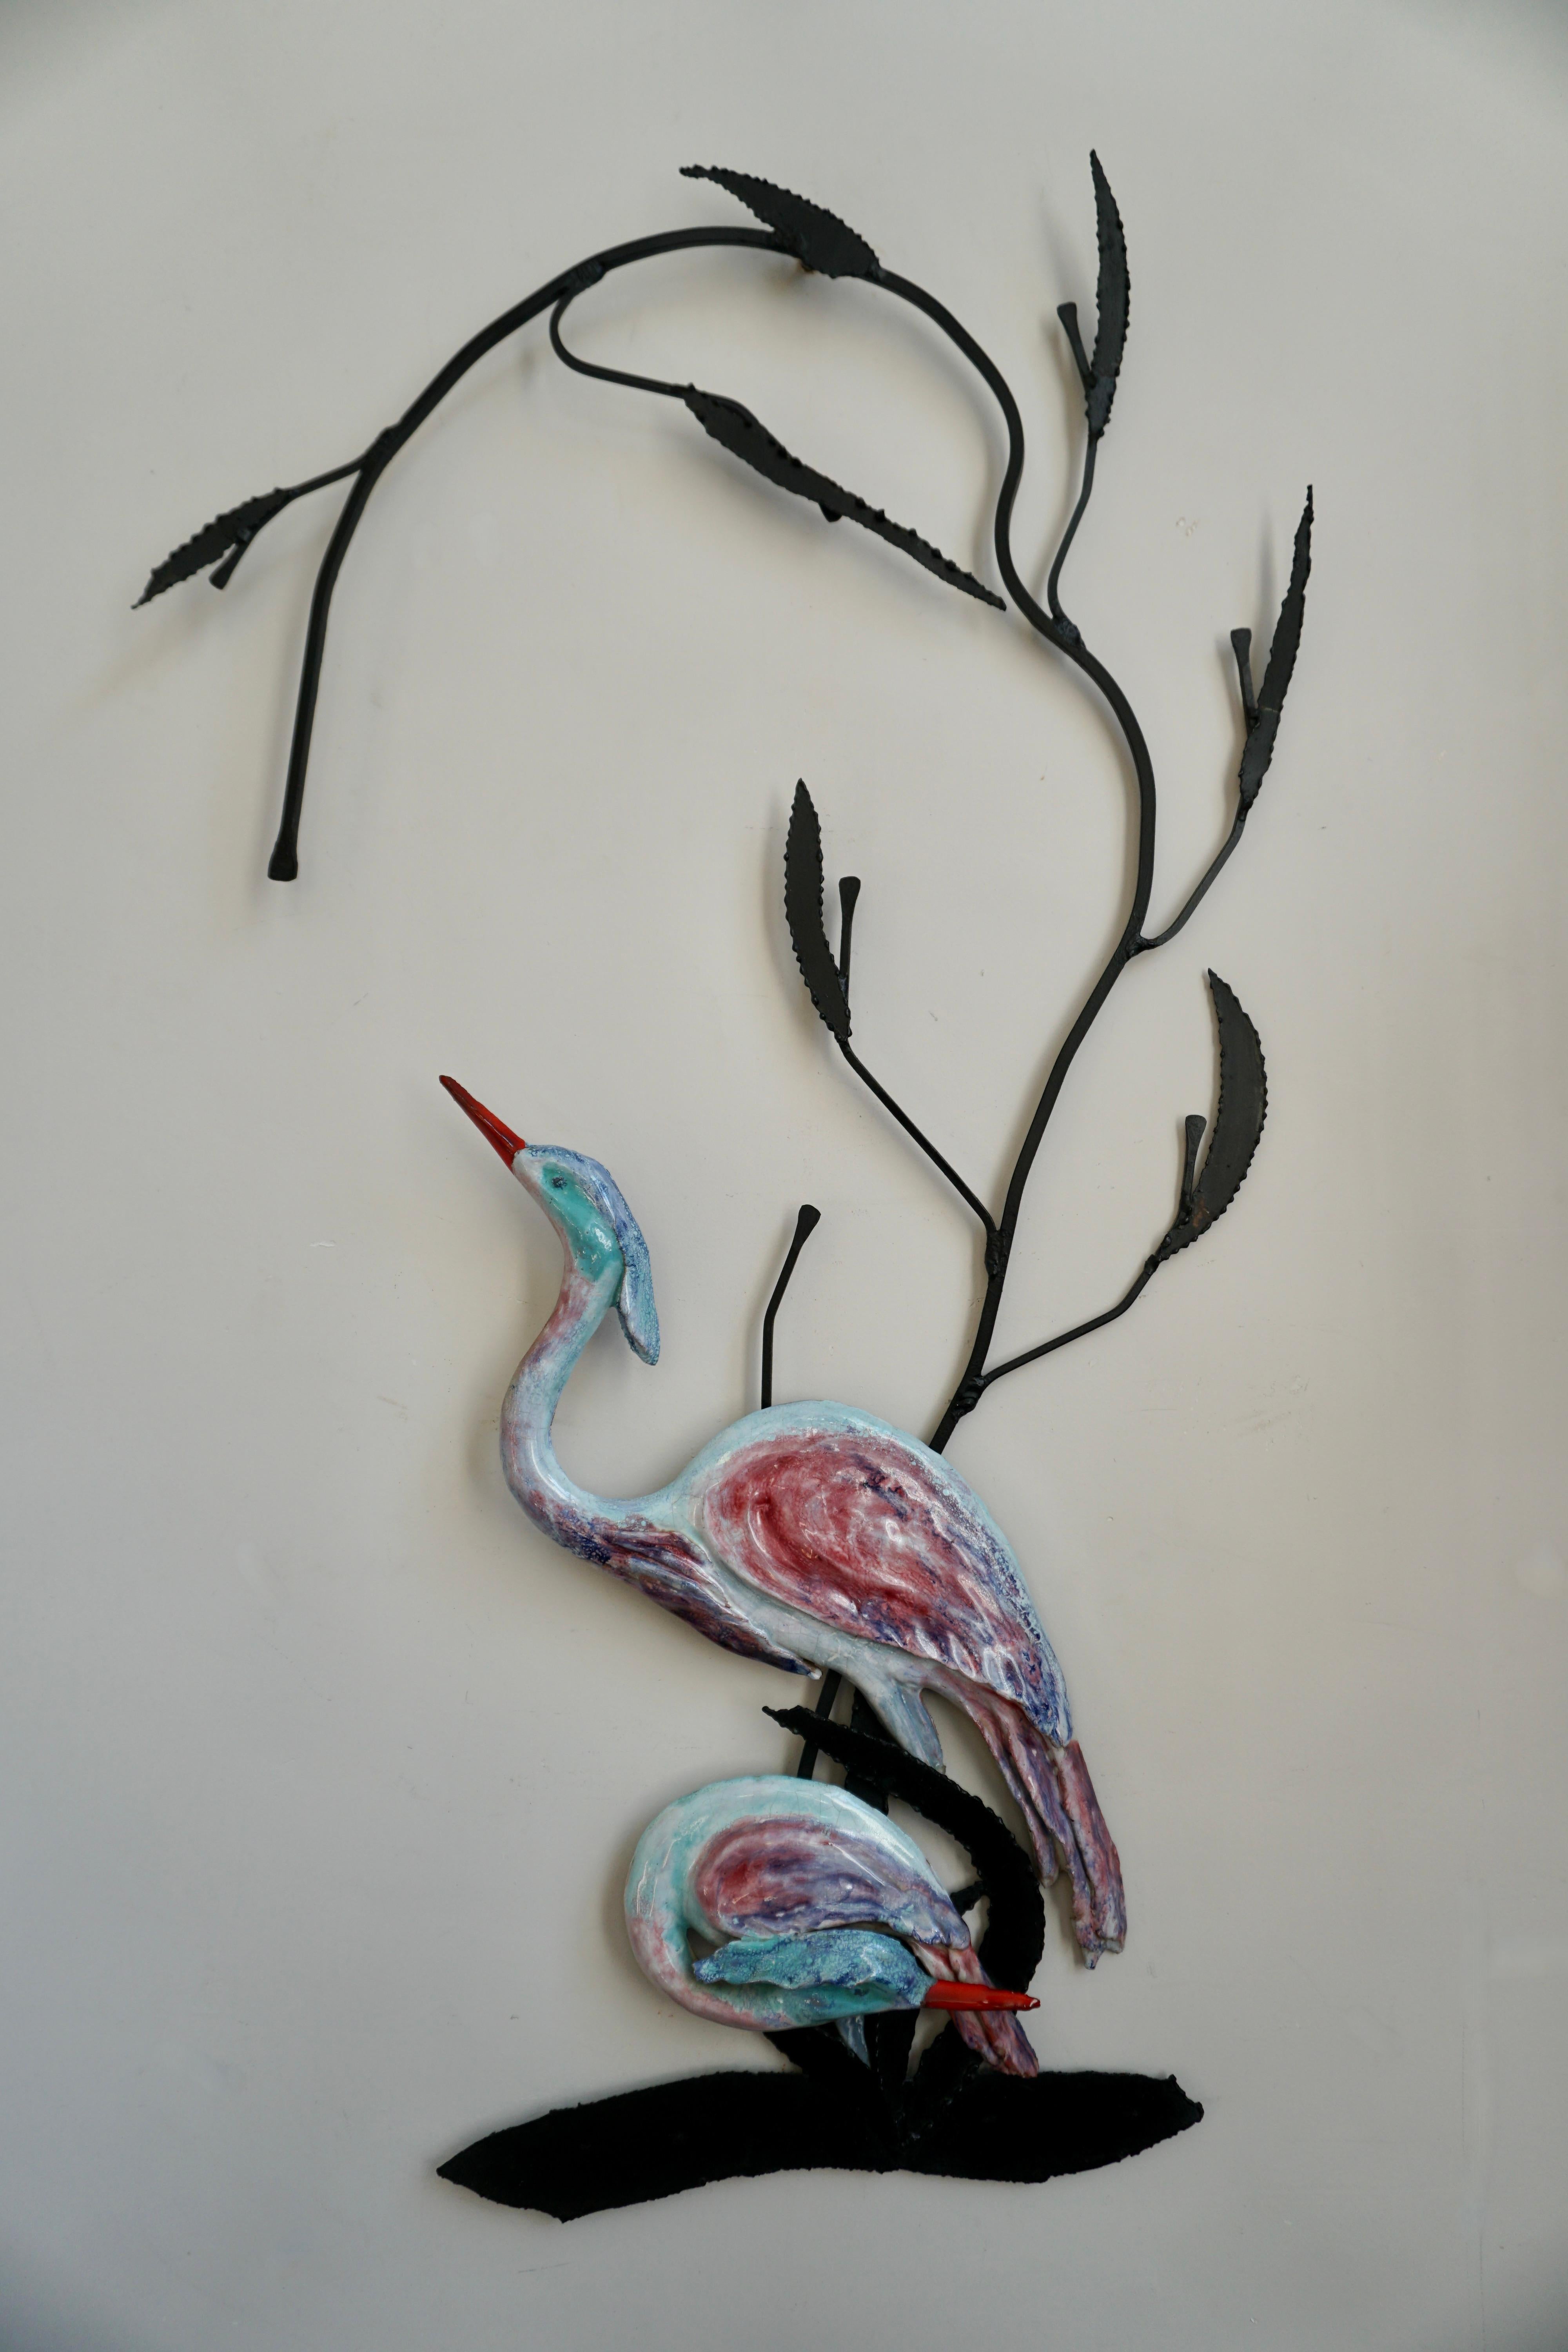 Sculpture murale d'oiseaux hérons en céramique.

Cette scène paisible représentant deux élégants hérons, pataugeant gracieusement dans un ruisseau d'eau douce, ajoute une touche décorative de mère nature à votre mur. Réalisé en céramique émaillée